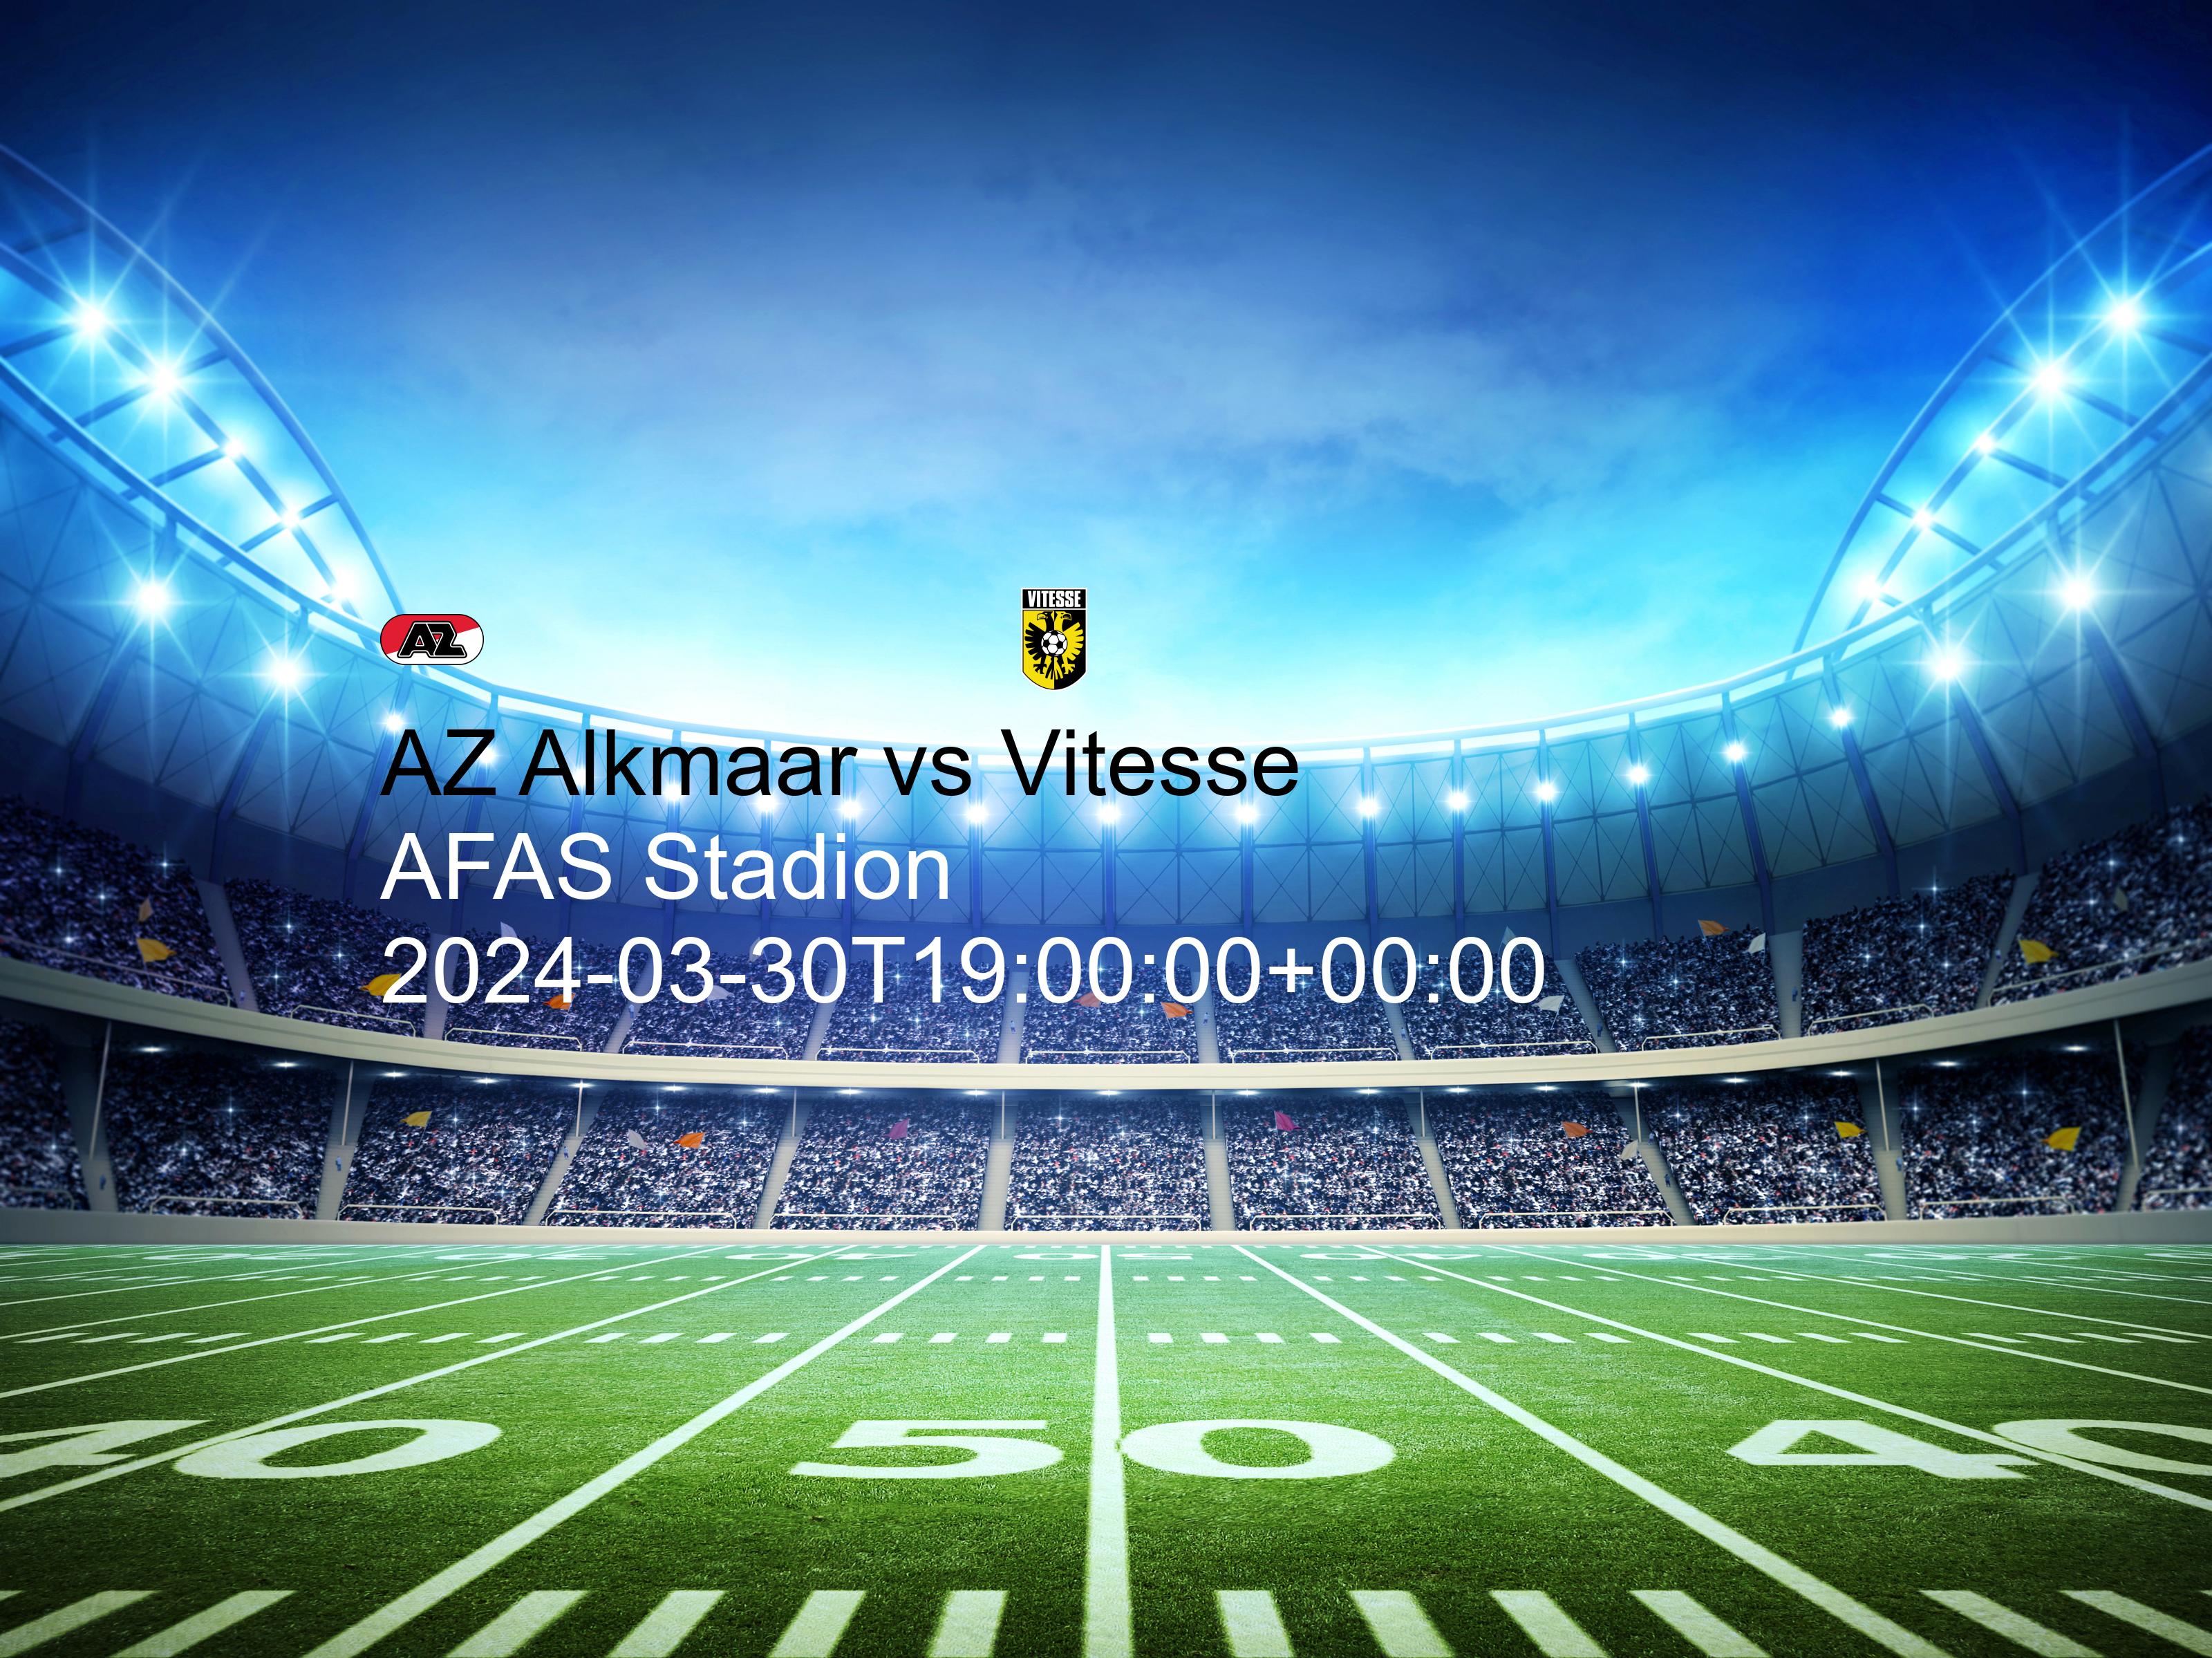 AZ Alkmaar vs Vitesse free betting tips